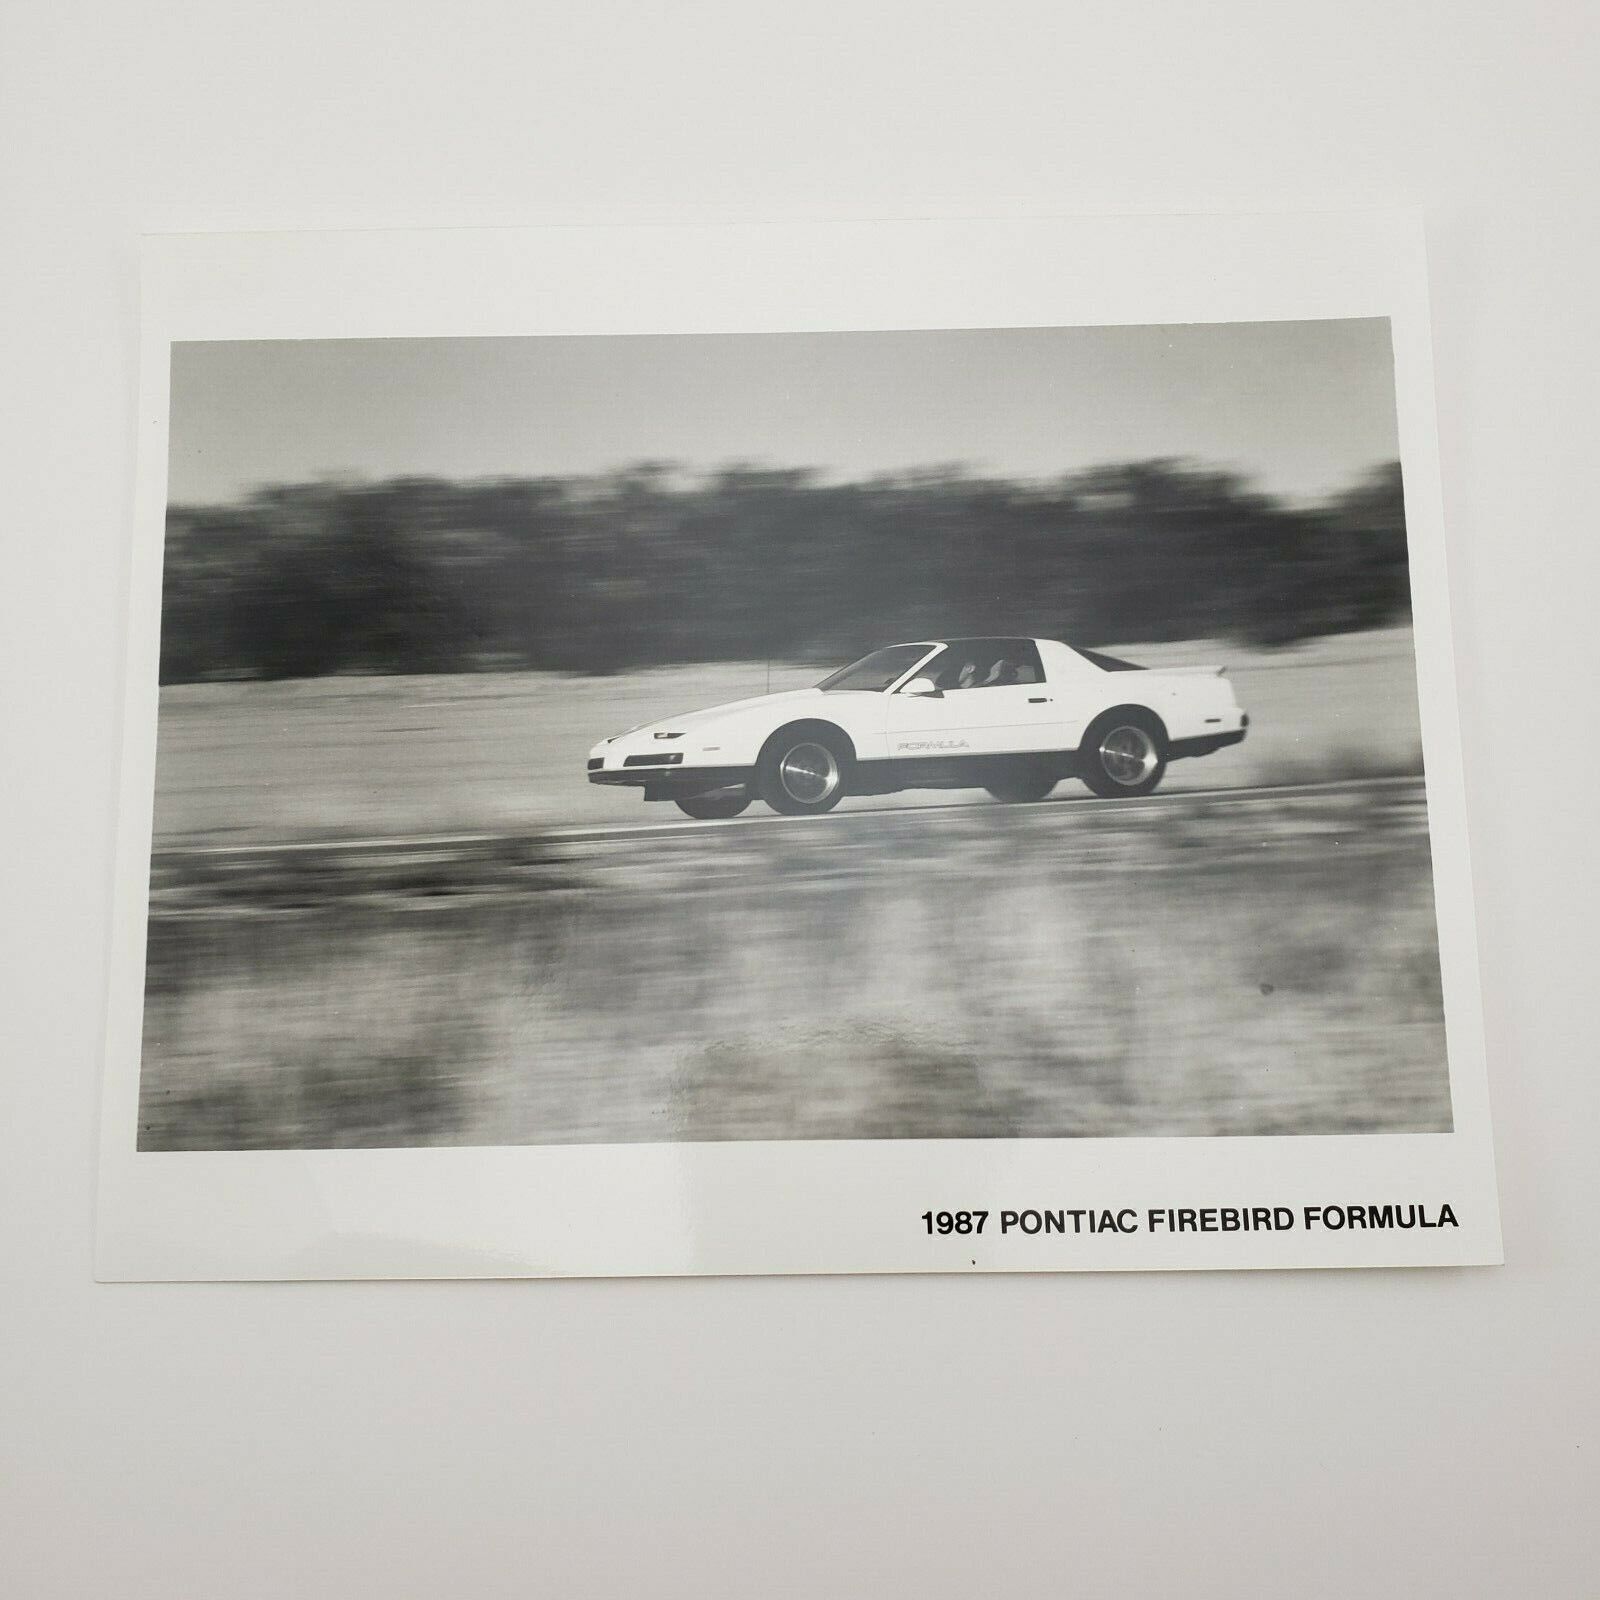 1987 Pontiac Firebird Formula Press Release Photo For Release 1986